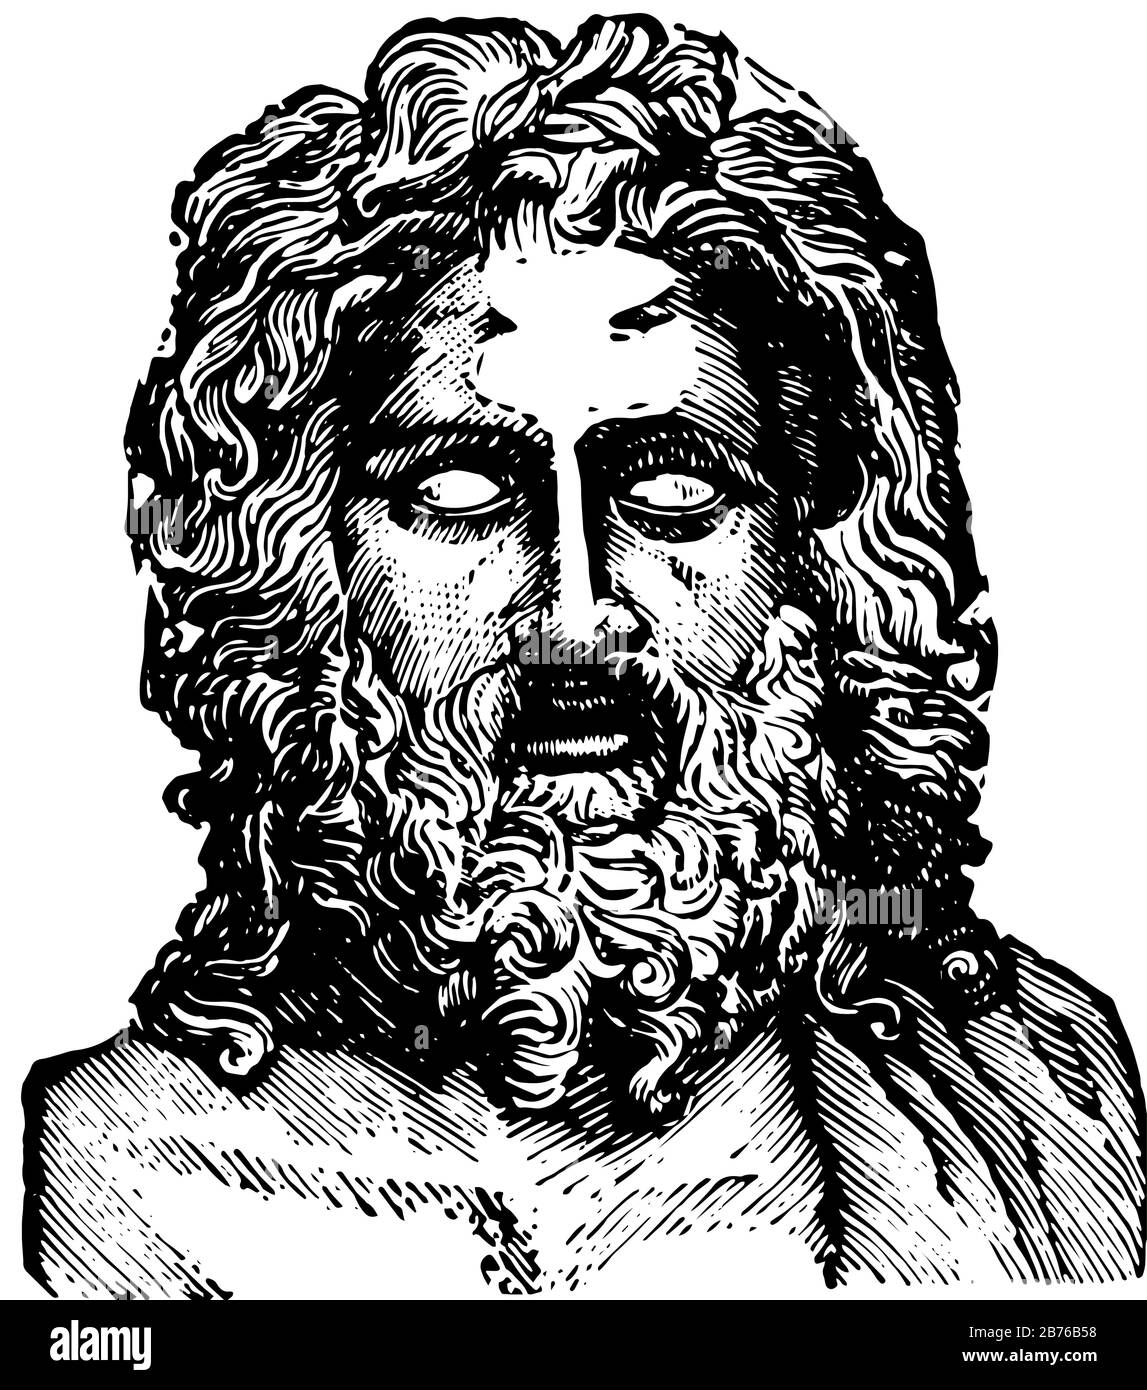 La statua di Giove era una delle sette meraviglie del mondo, disegno d'epoca o illustrazione dell'incisione. Illustrazione Vettoriale